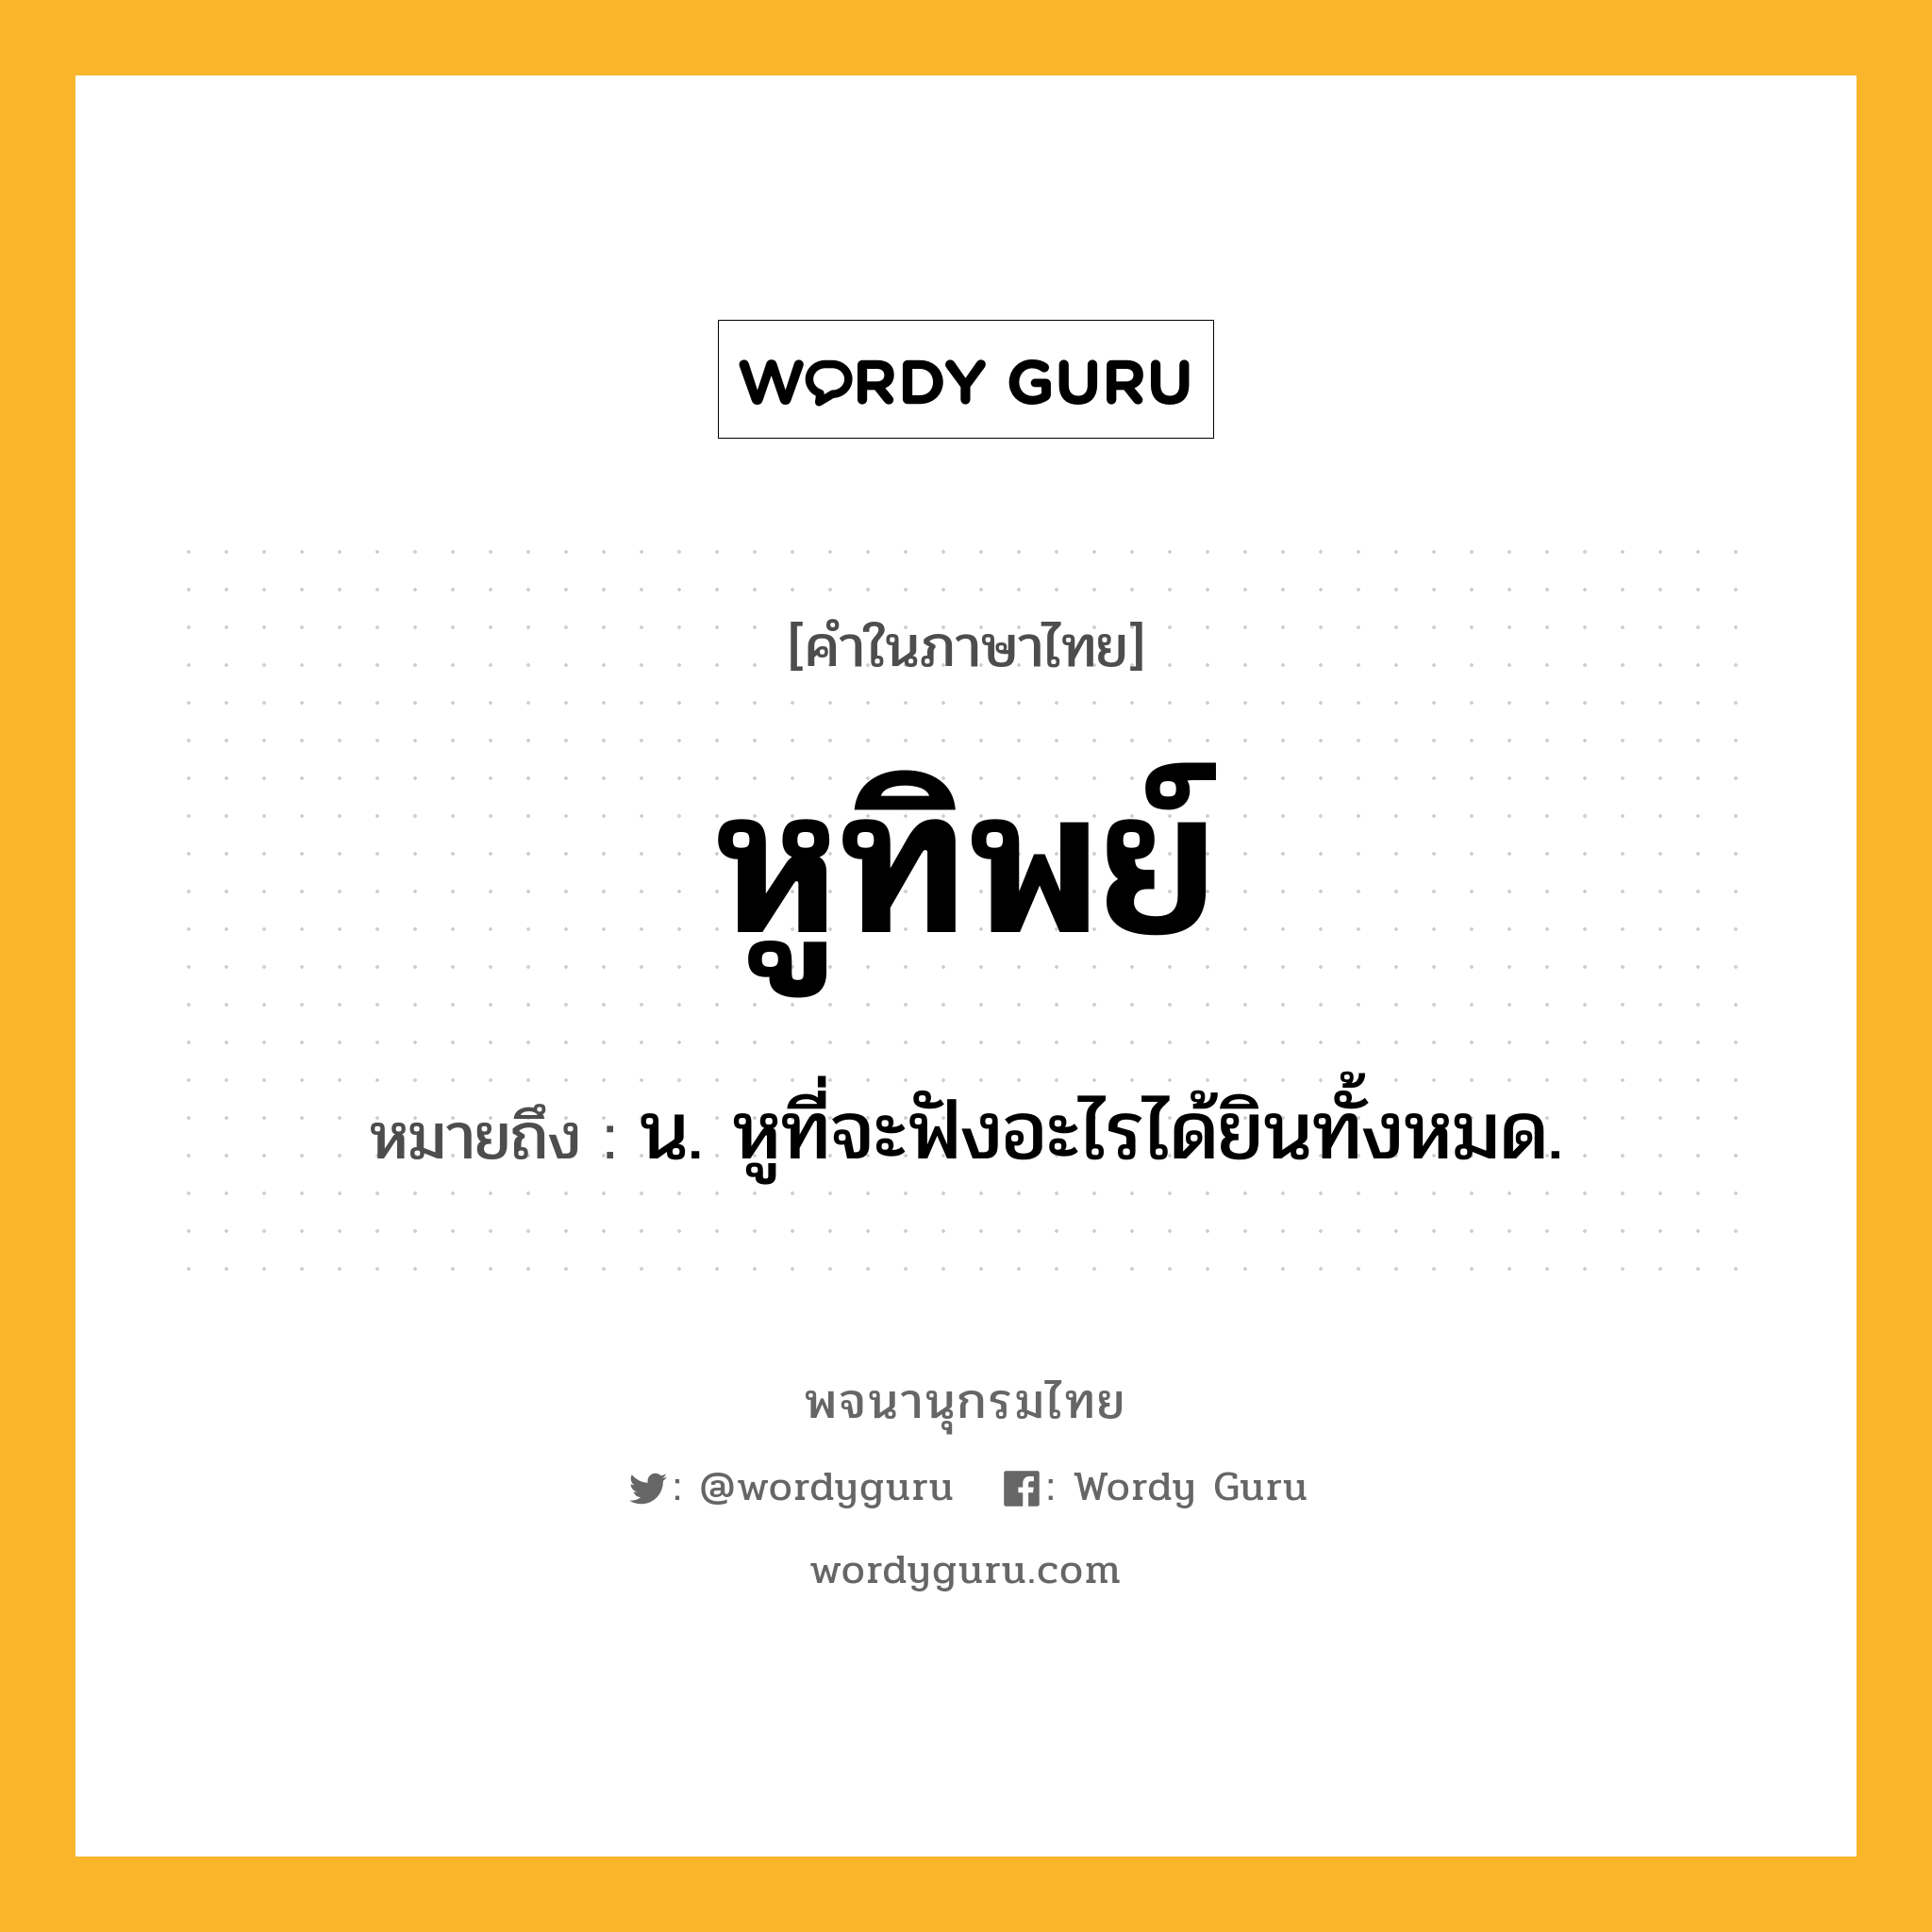 หูทิพย์ หมายถึงอะไร?, คำในภาษาไทย หูทิพย์ หมายถึง น. หูที่จะฟังอะไรได้ยินทั้งหมด.